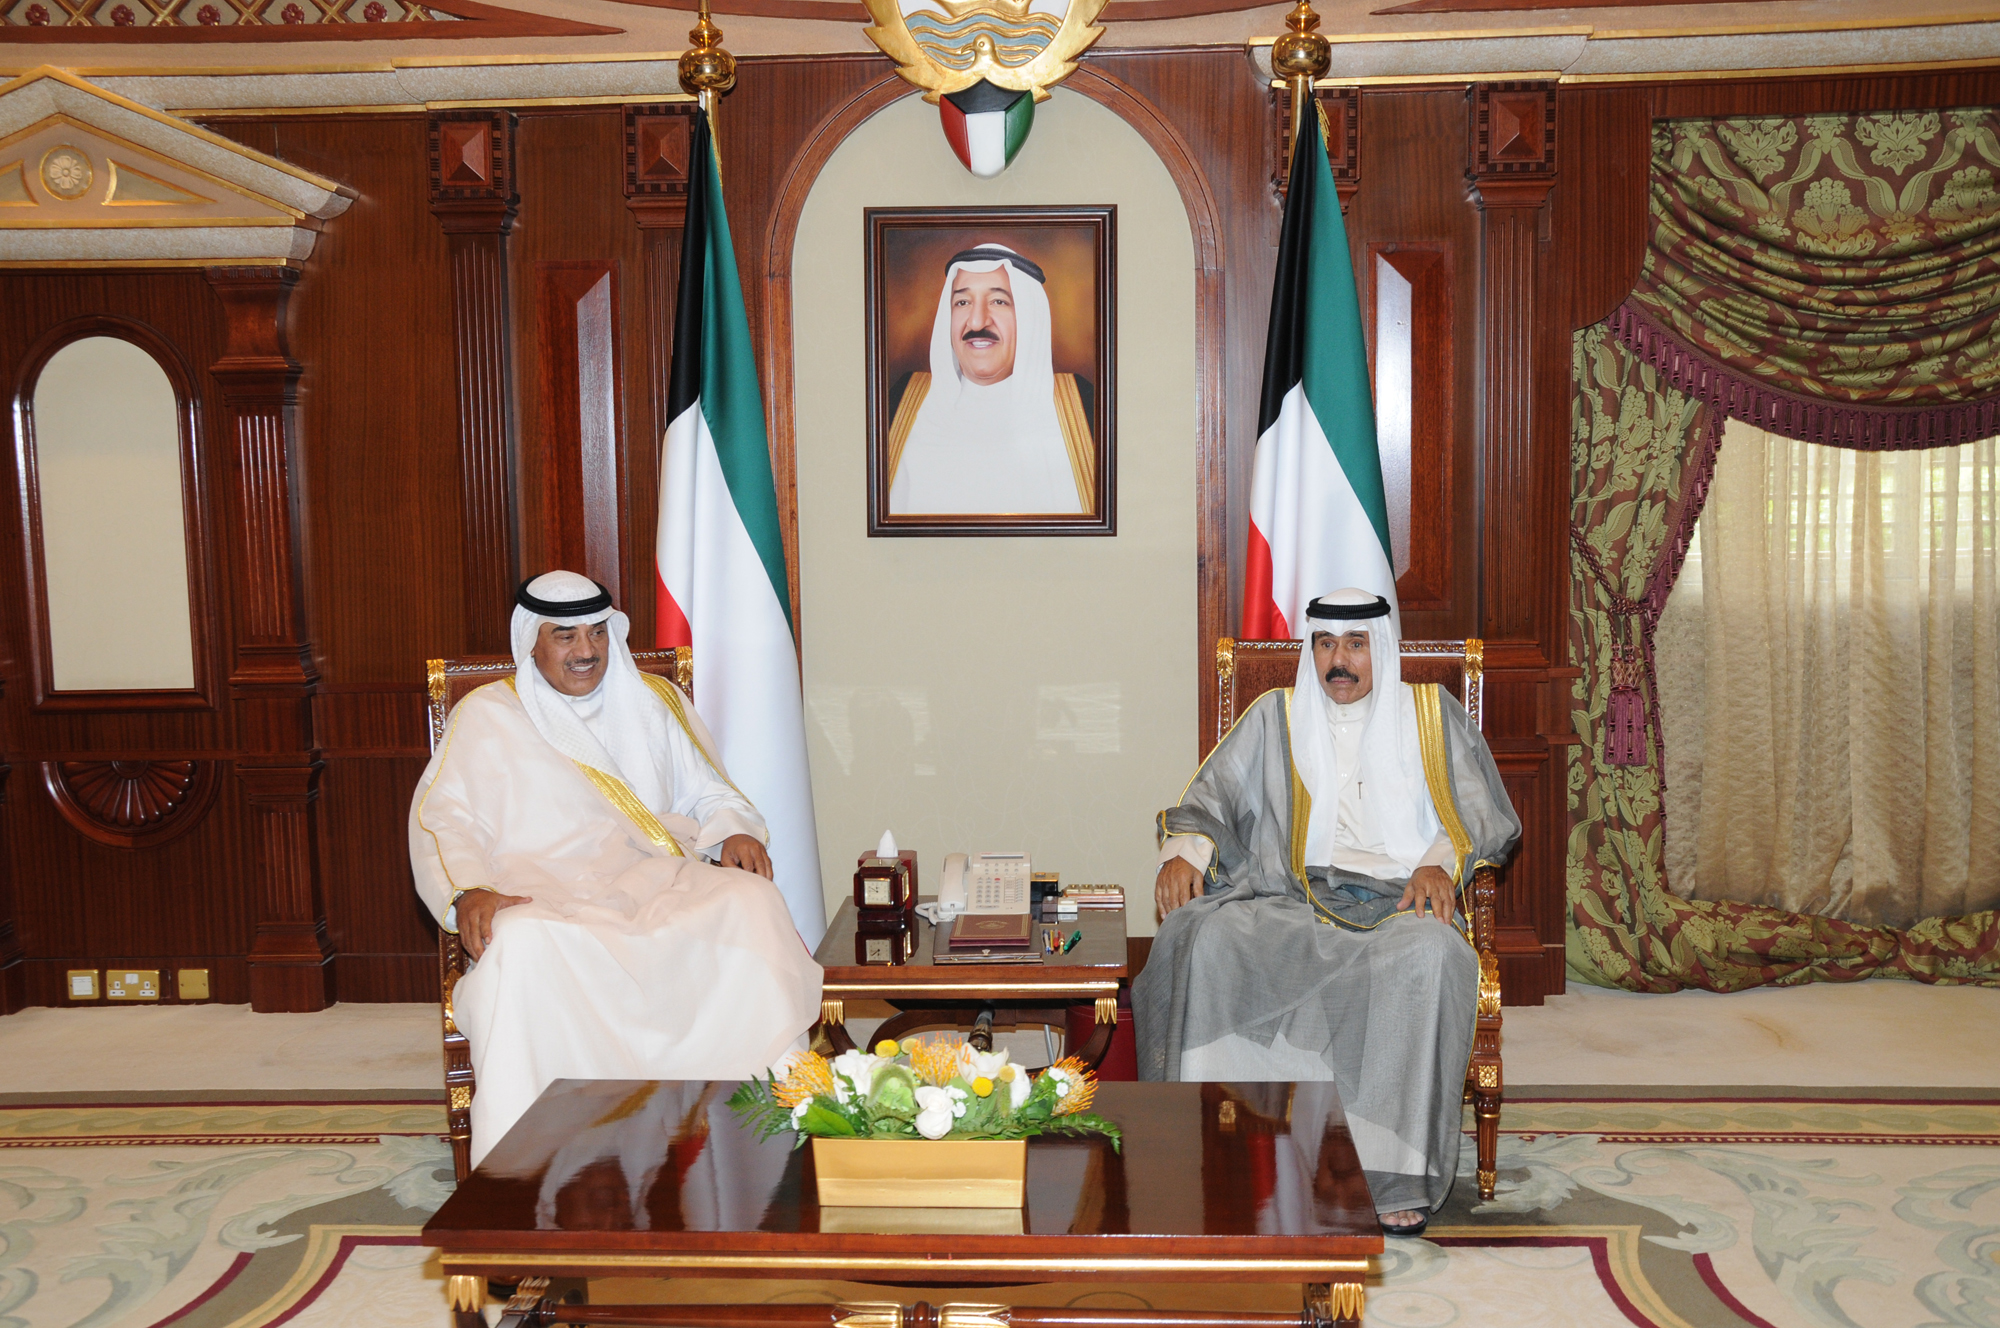 His Highness the Crown Prince Sheikh Nawaf Al-Ahmad Al-Jaber Al-Sabah received Deputy Prime Minister and Foreign Minister Sheikh Sabah Al-Khaled Al-Hamad Al-Sabah